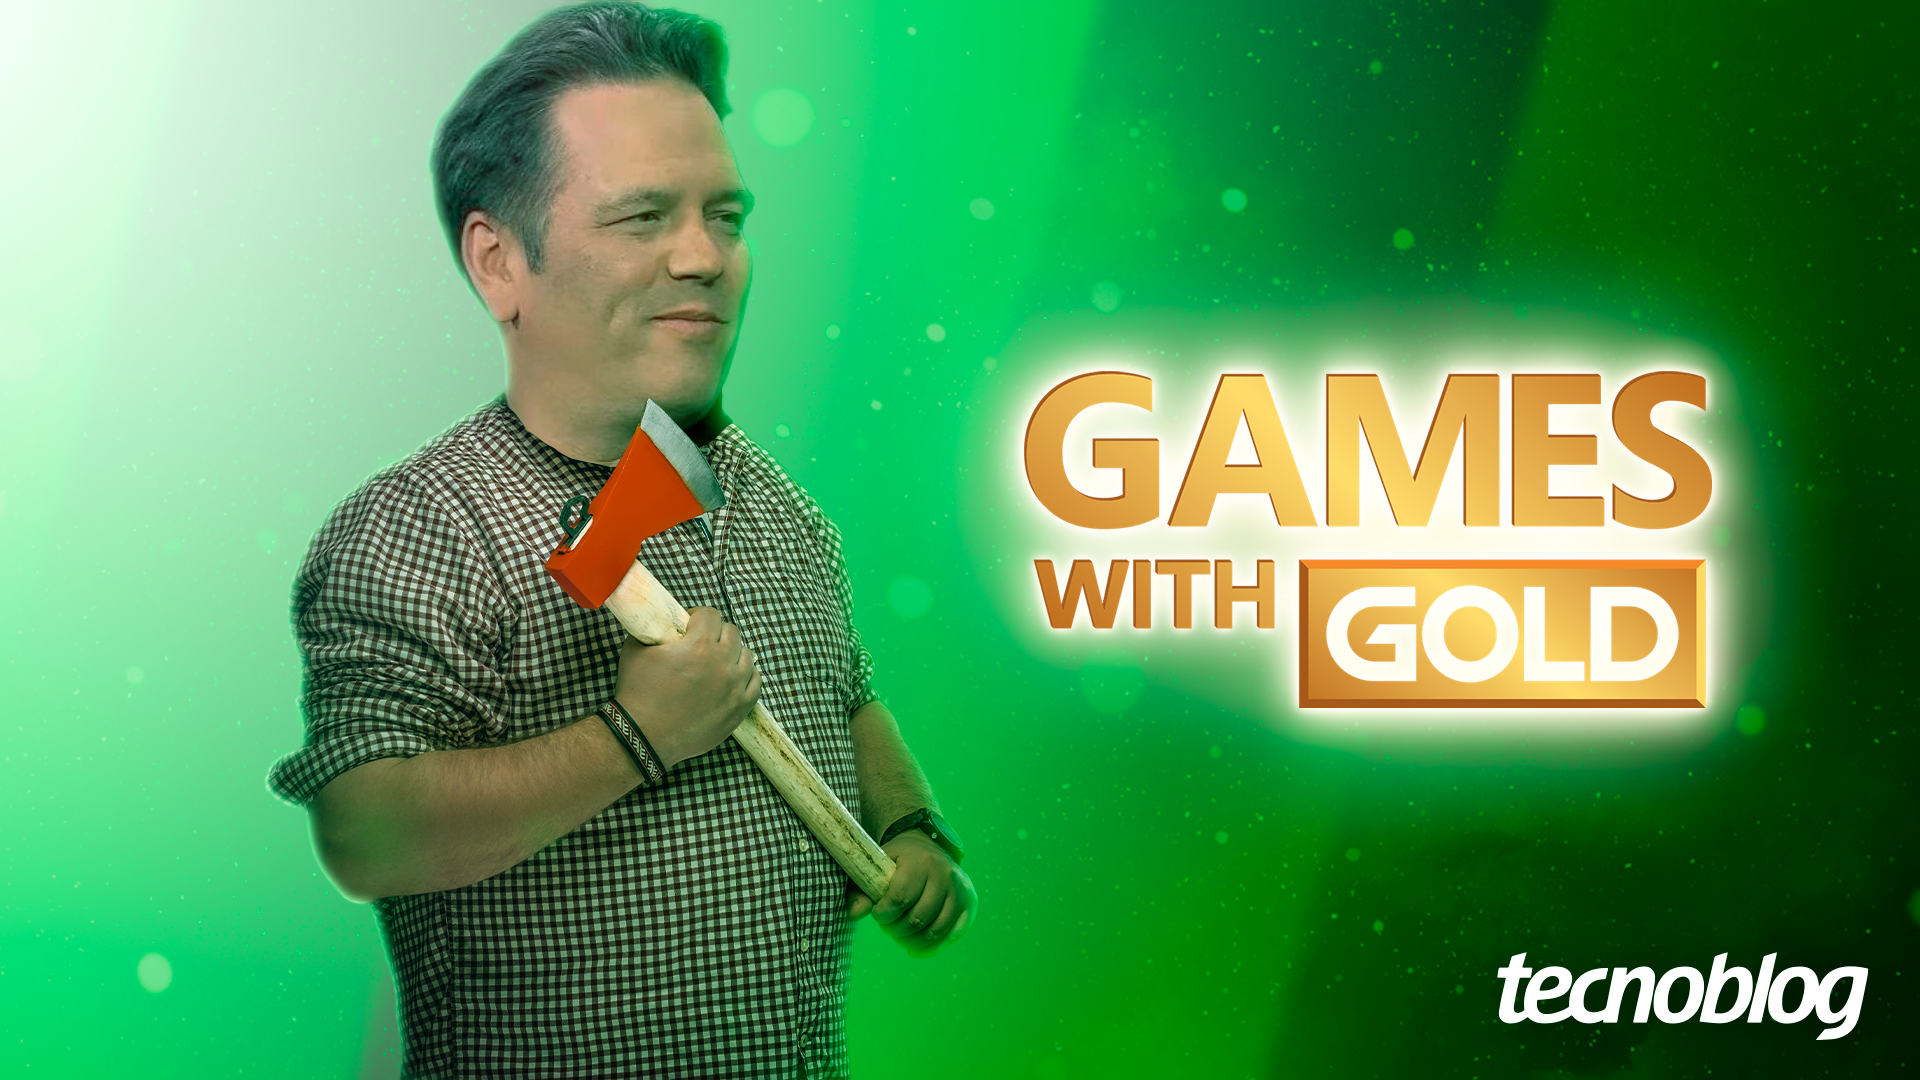 Última chance para pegar 16 jogos grátis antes que a Xbox Live Gold acabe -  Windows Club